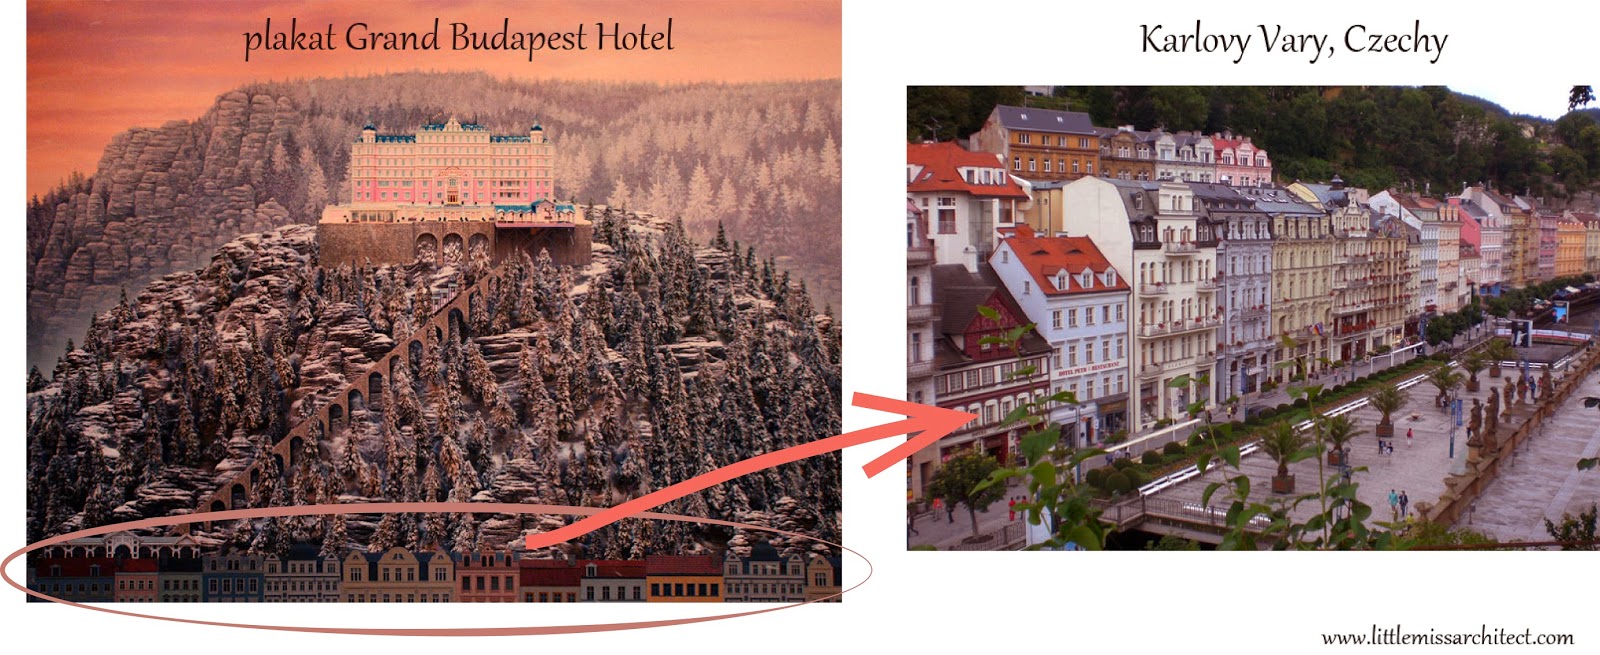 Grand Budapest Hotel, Karlovy Vary, Czechy, inspiracja